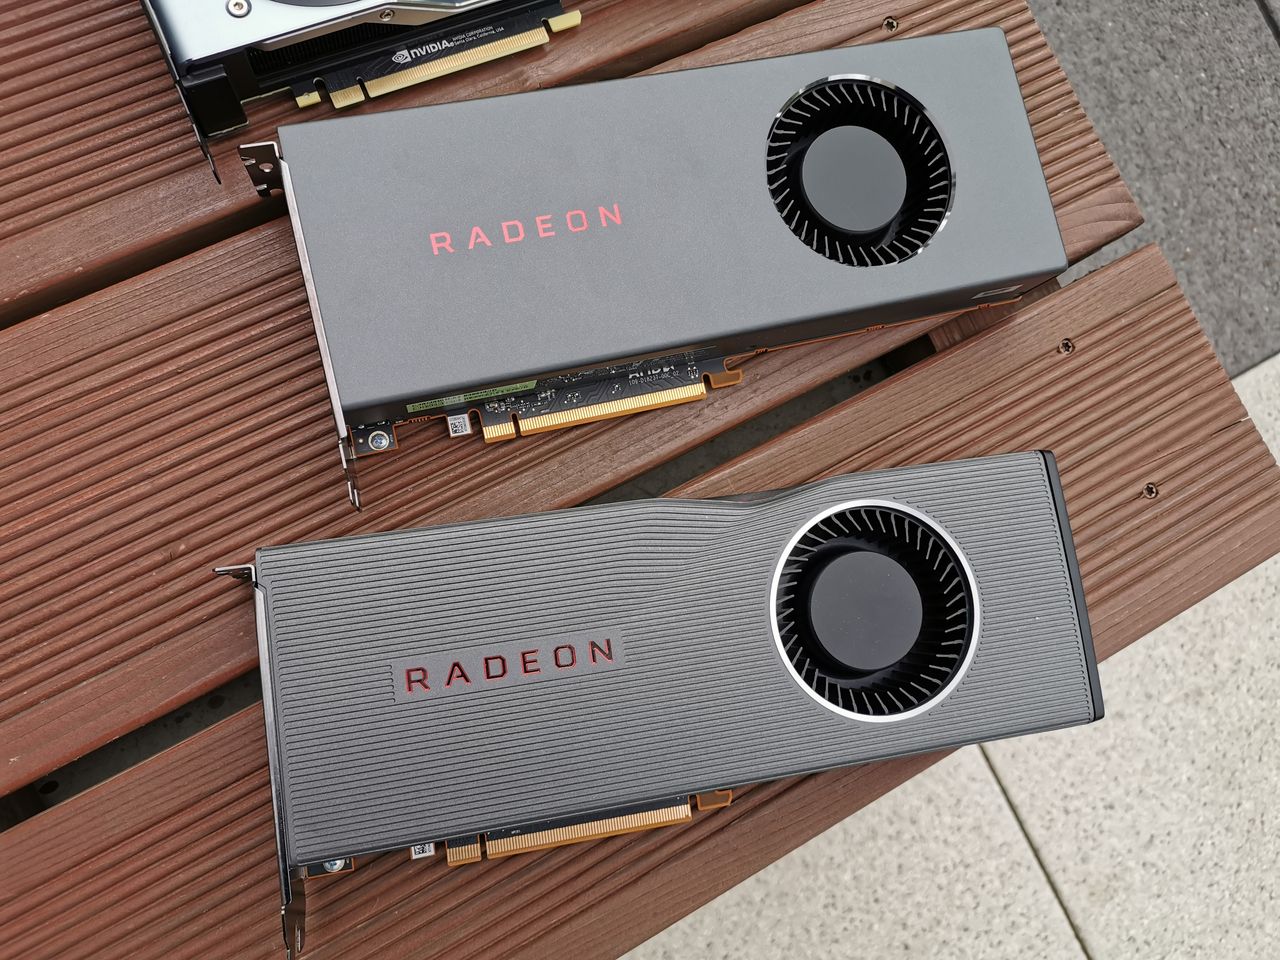 Premiera Radeon RX 5700 XT i RX 5700 - test najnowszych kart graficznych AMD